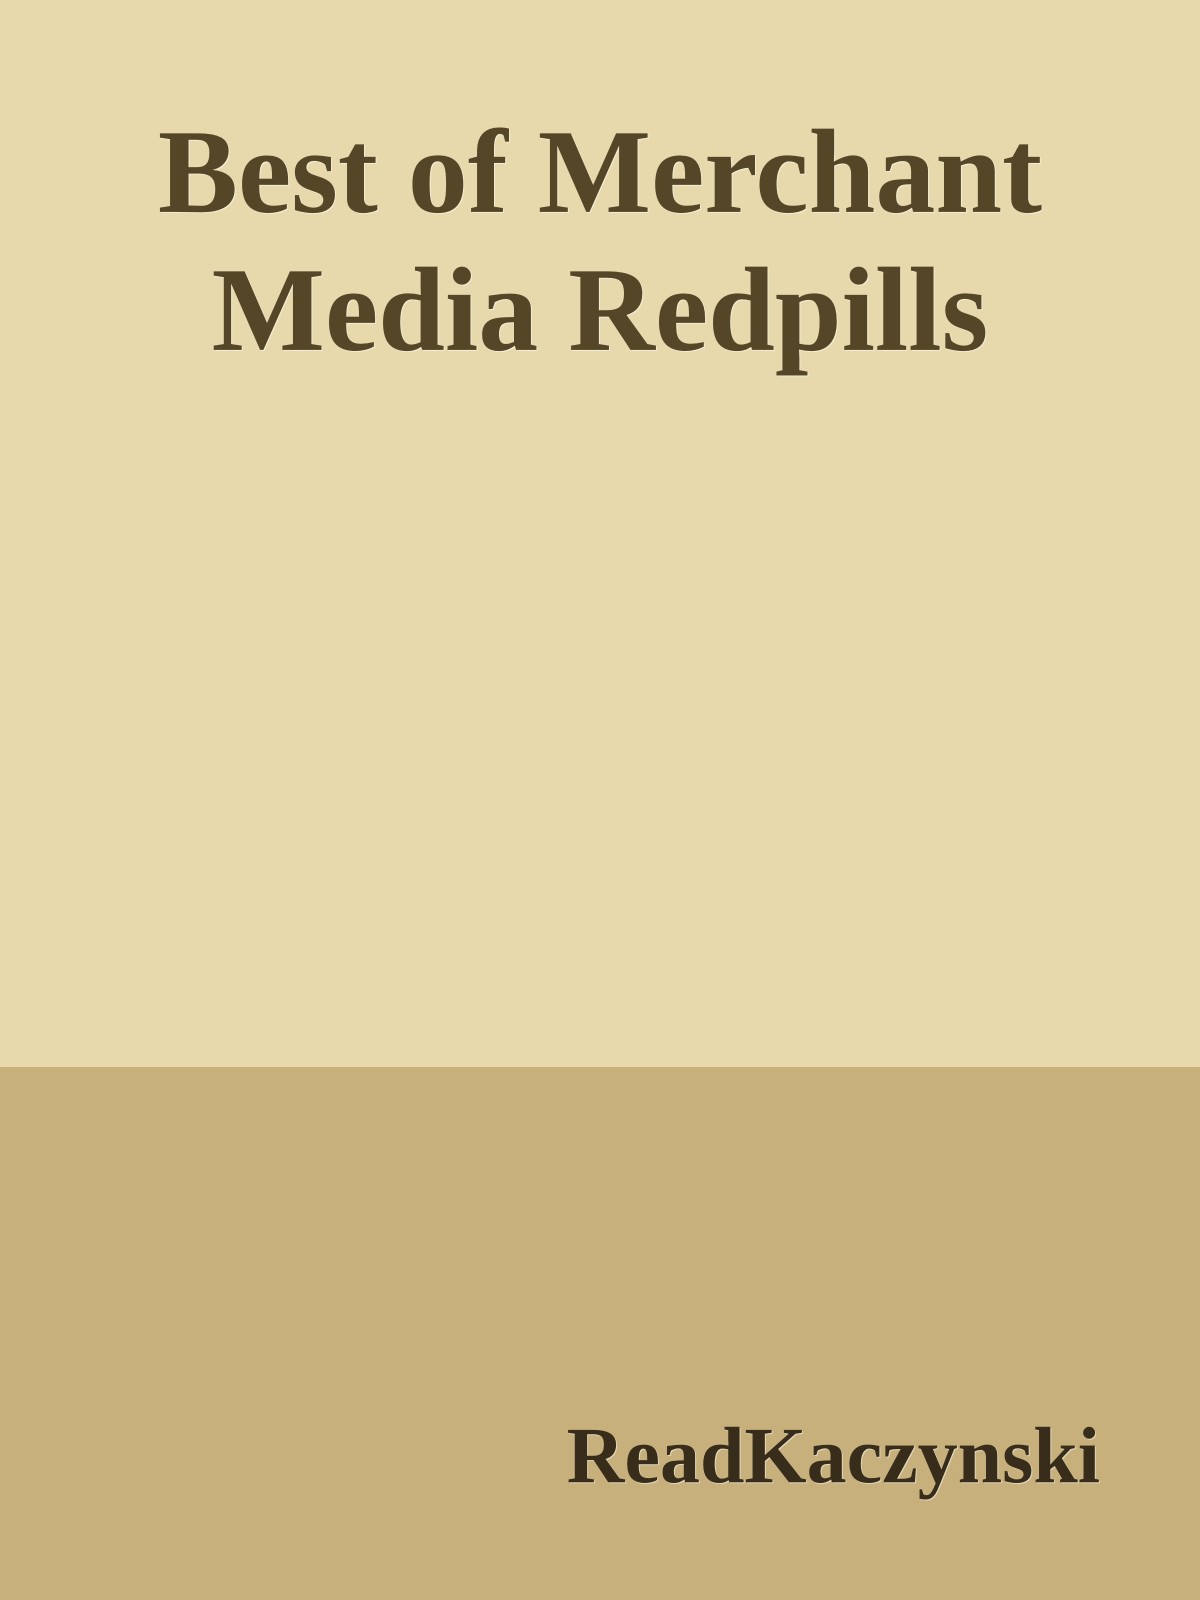 Best of Merchant Media Redpills (2019) by ReadKaczynski